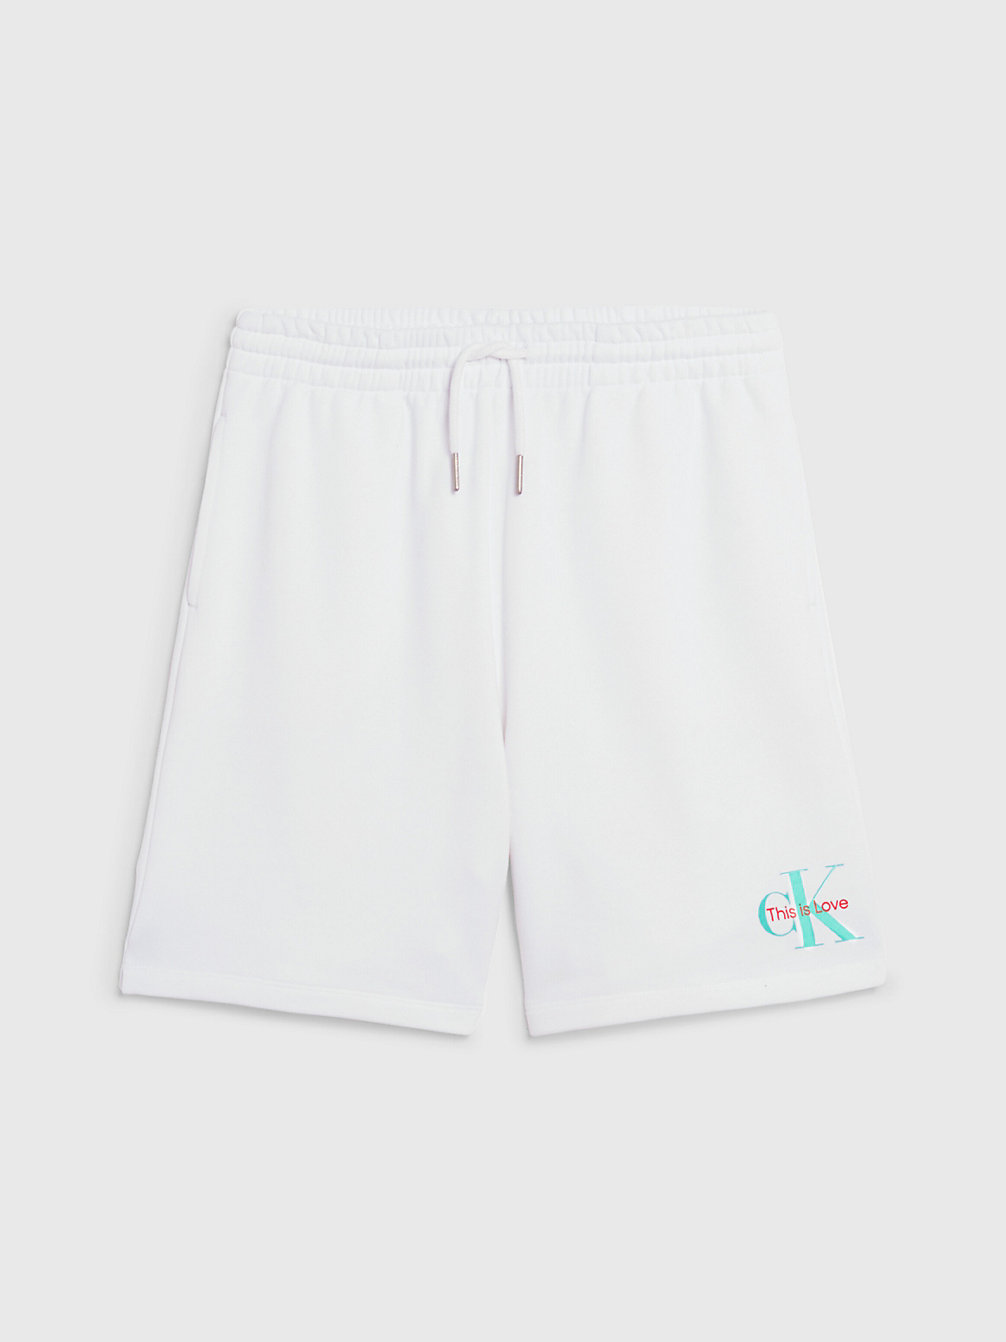 BRIGHT WHITE Unisex Jogger Shorts - Pride undefined kids unisex Calvin Klein